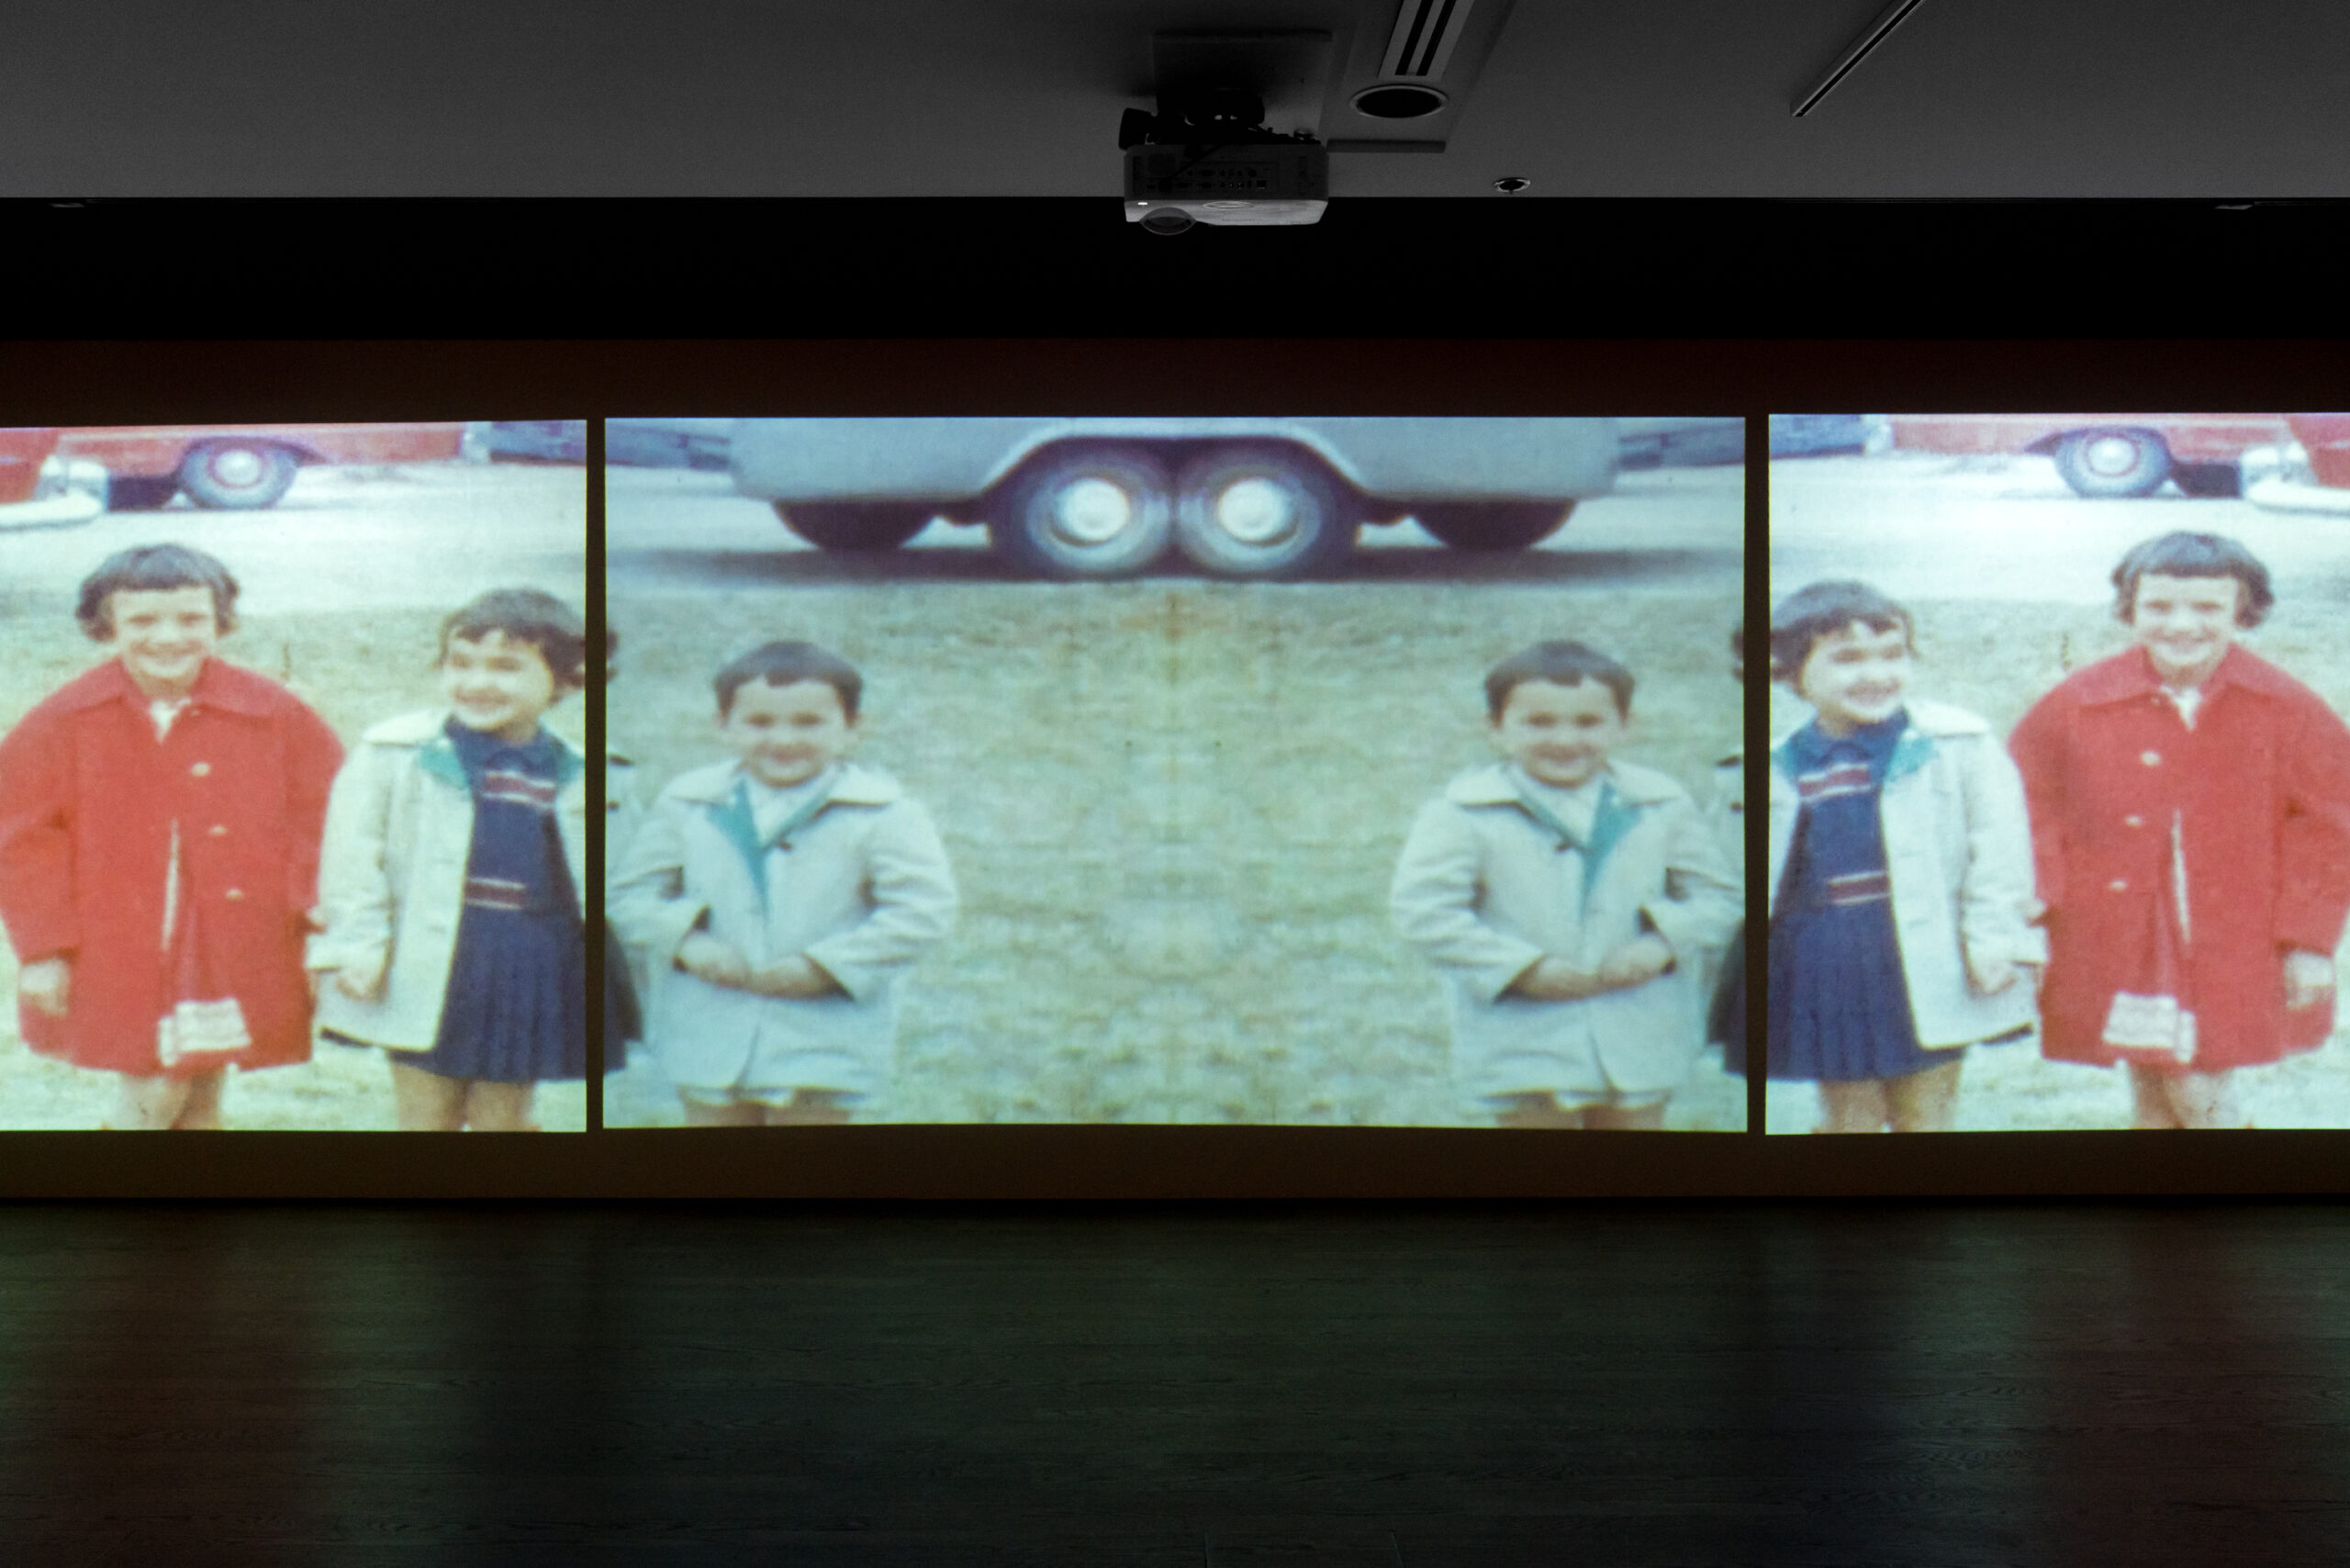 Caroline Monnet et Laura Ortman, Partition exquise, vue de l’exposition présentée au Musée McCord dans le cadre de MOMENTA 2021. Photo : Jean-Michael Seminaro